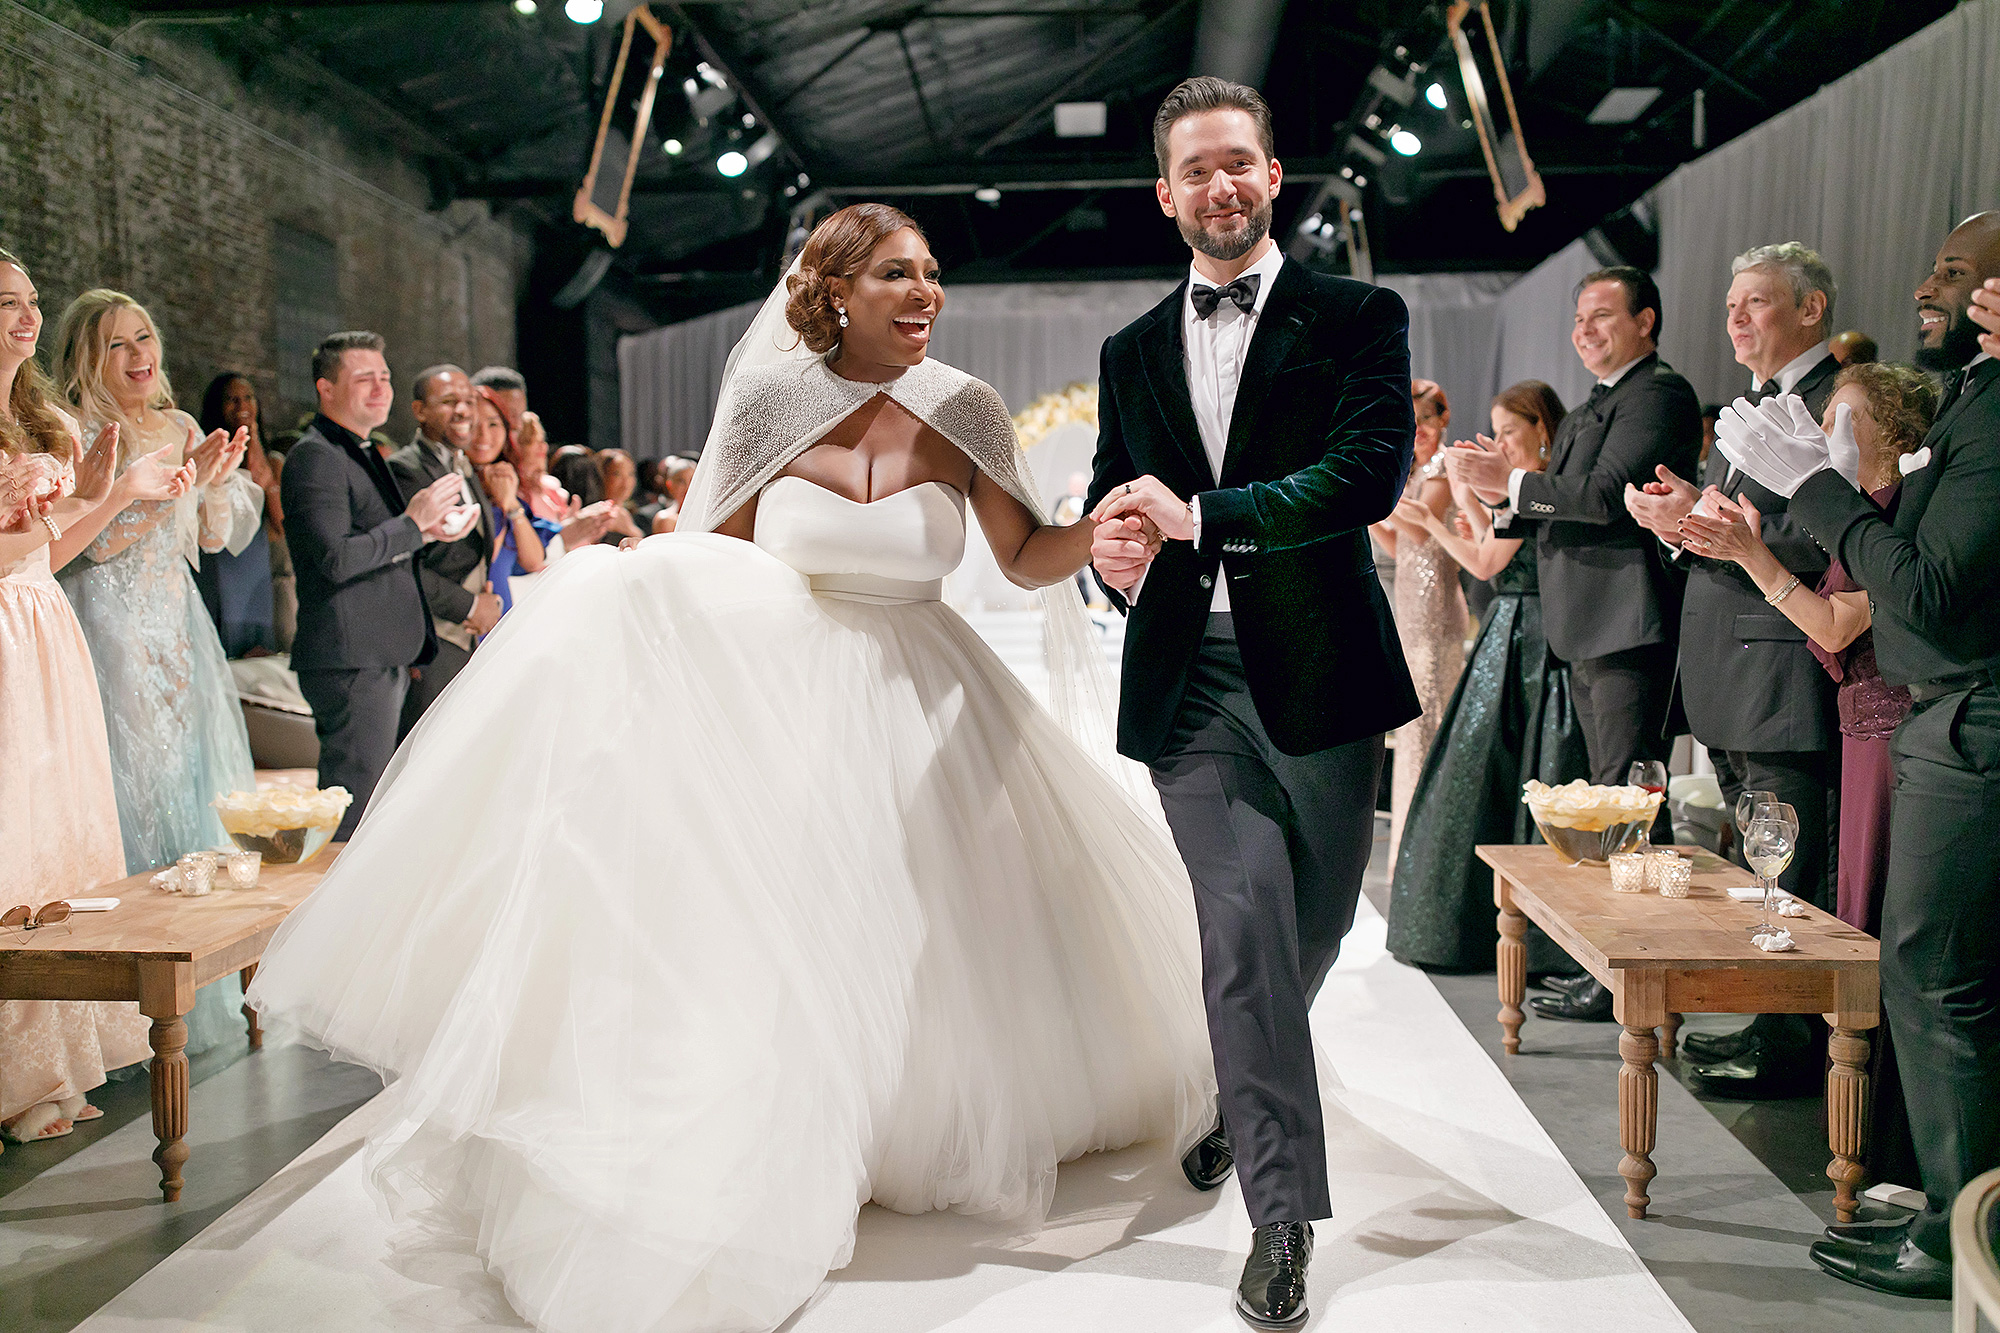 The Bride Wore McQueen: Serena Williams' Wedding Dress - Loren's World